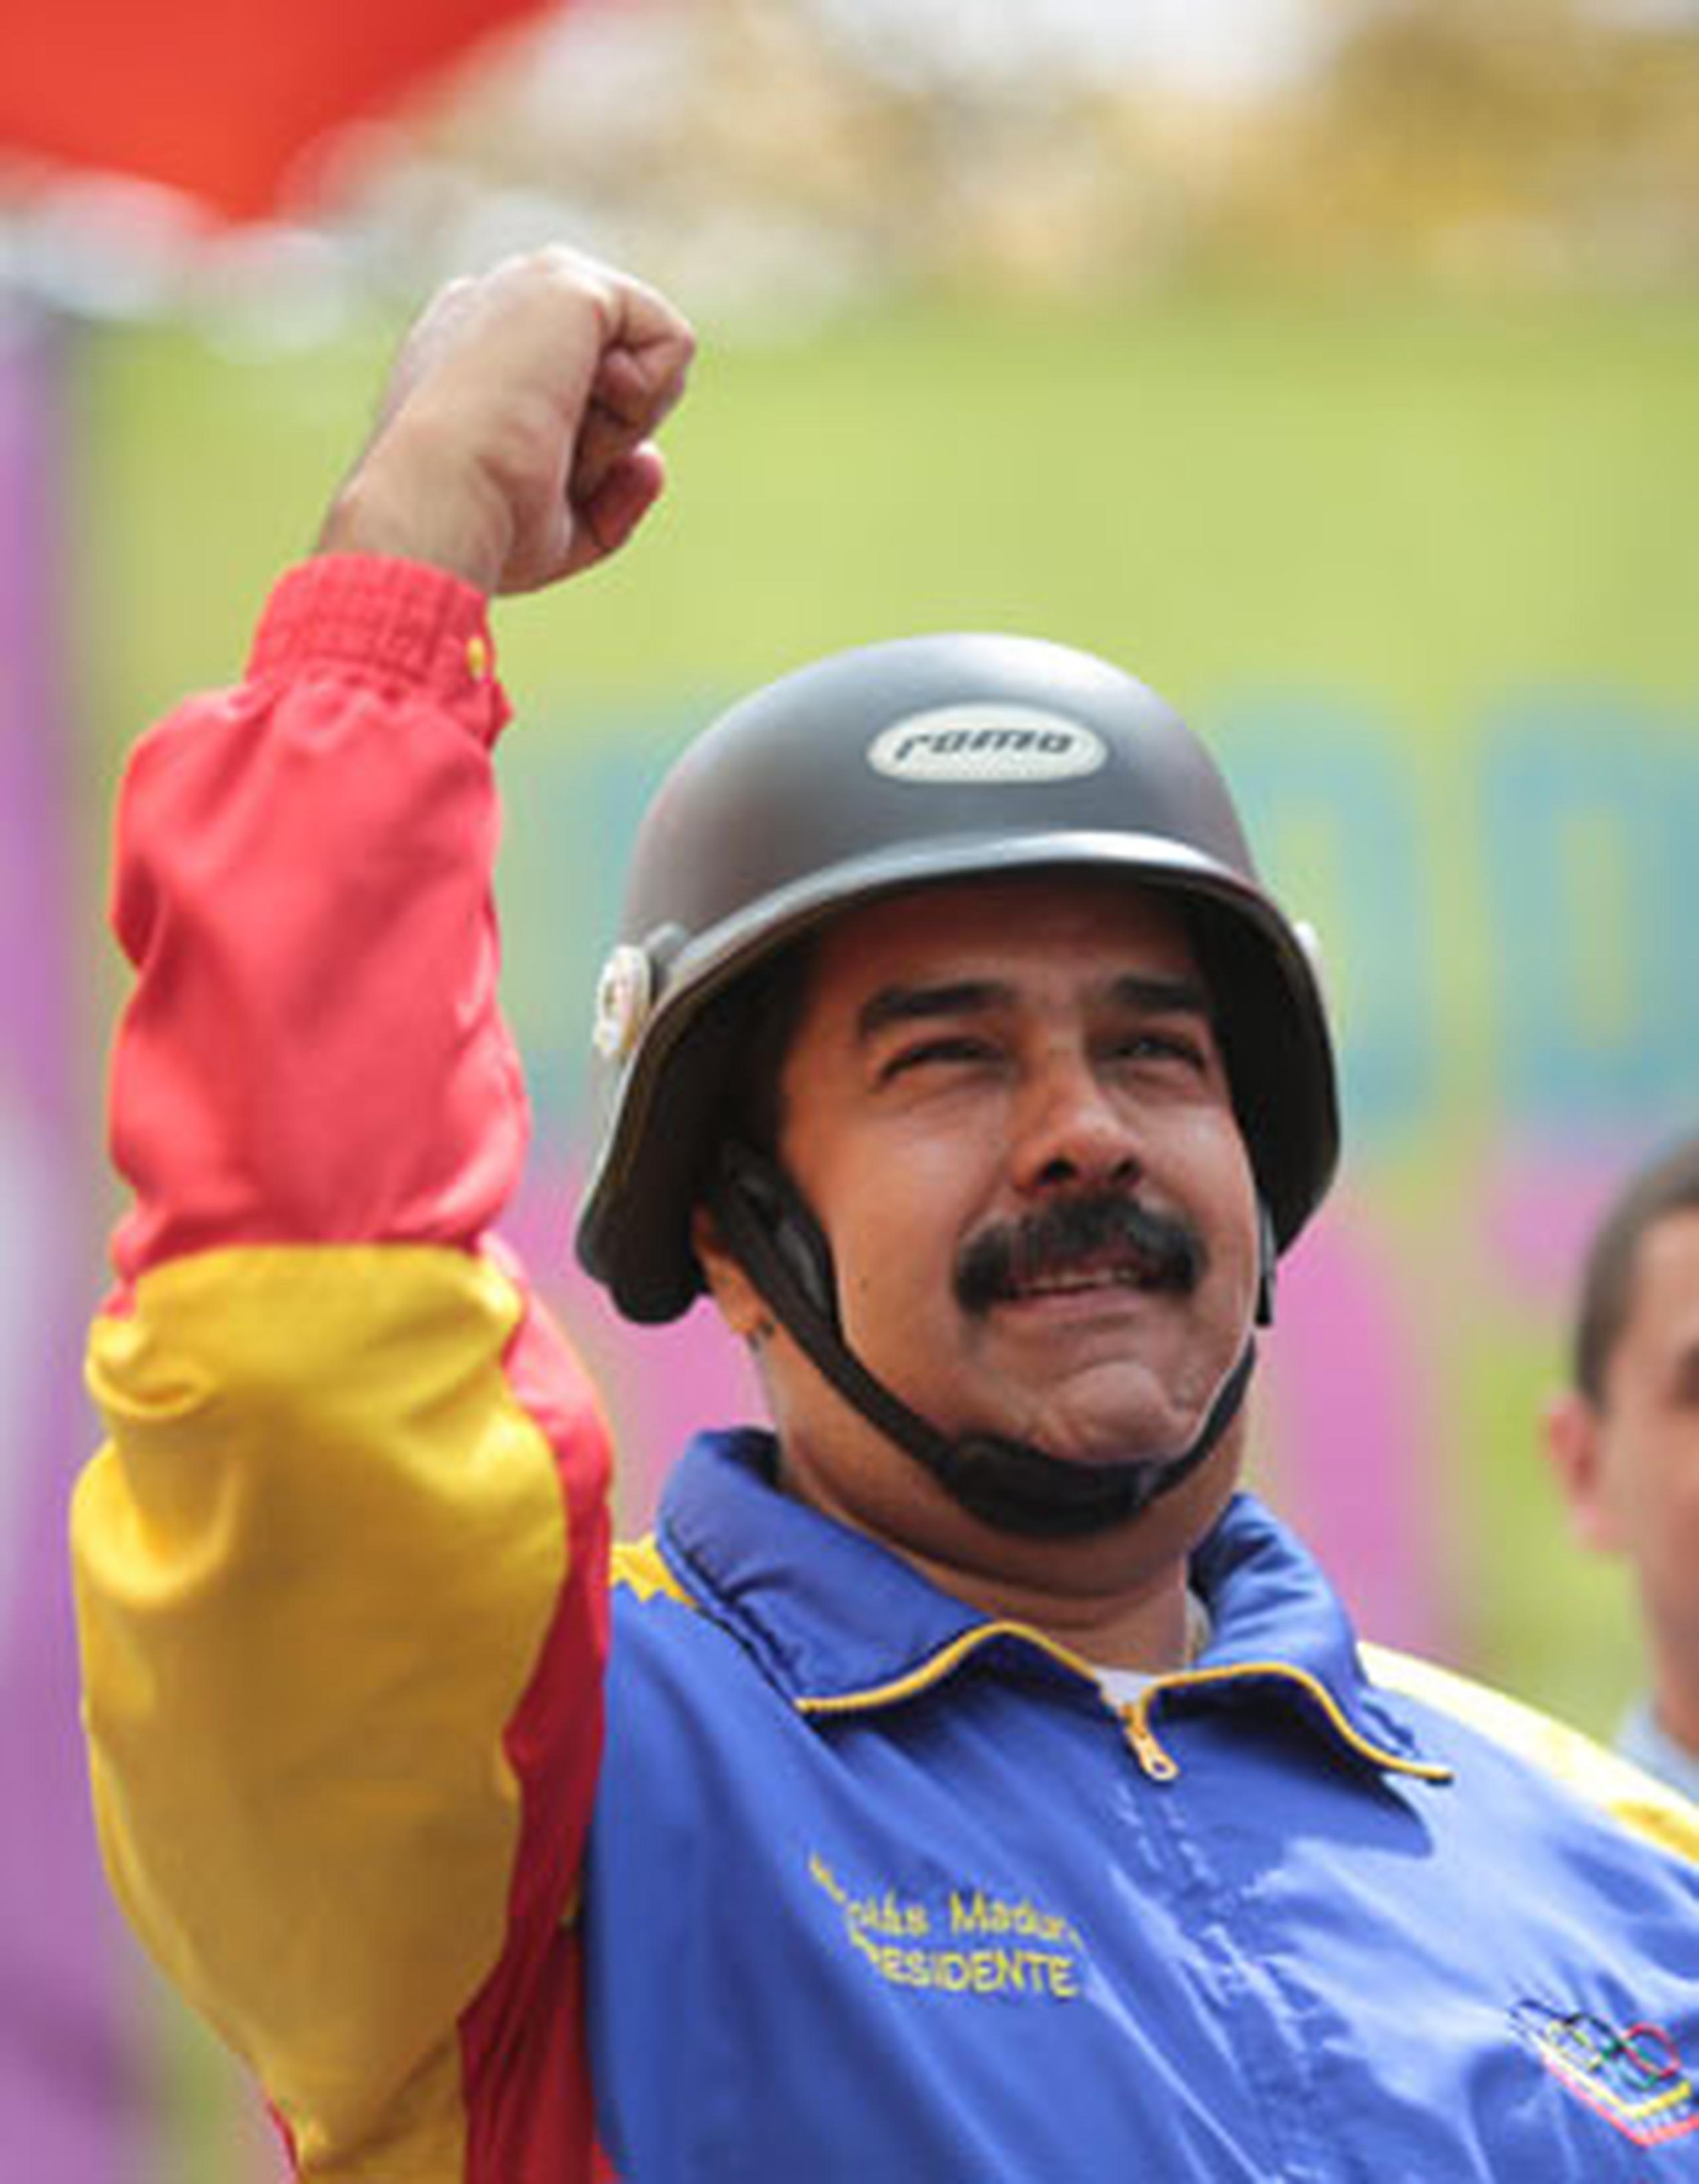 Desde el estallido de las protestas en contra del Gobierno venezolano hace ya dos semanas, Maduro ha recibido críticas de figuras como Rubén Blades y Madonna. (EFE)